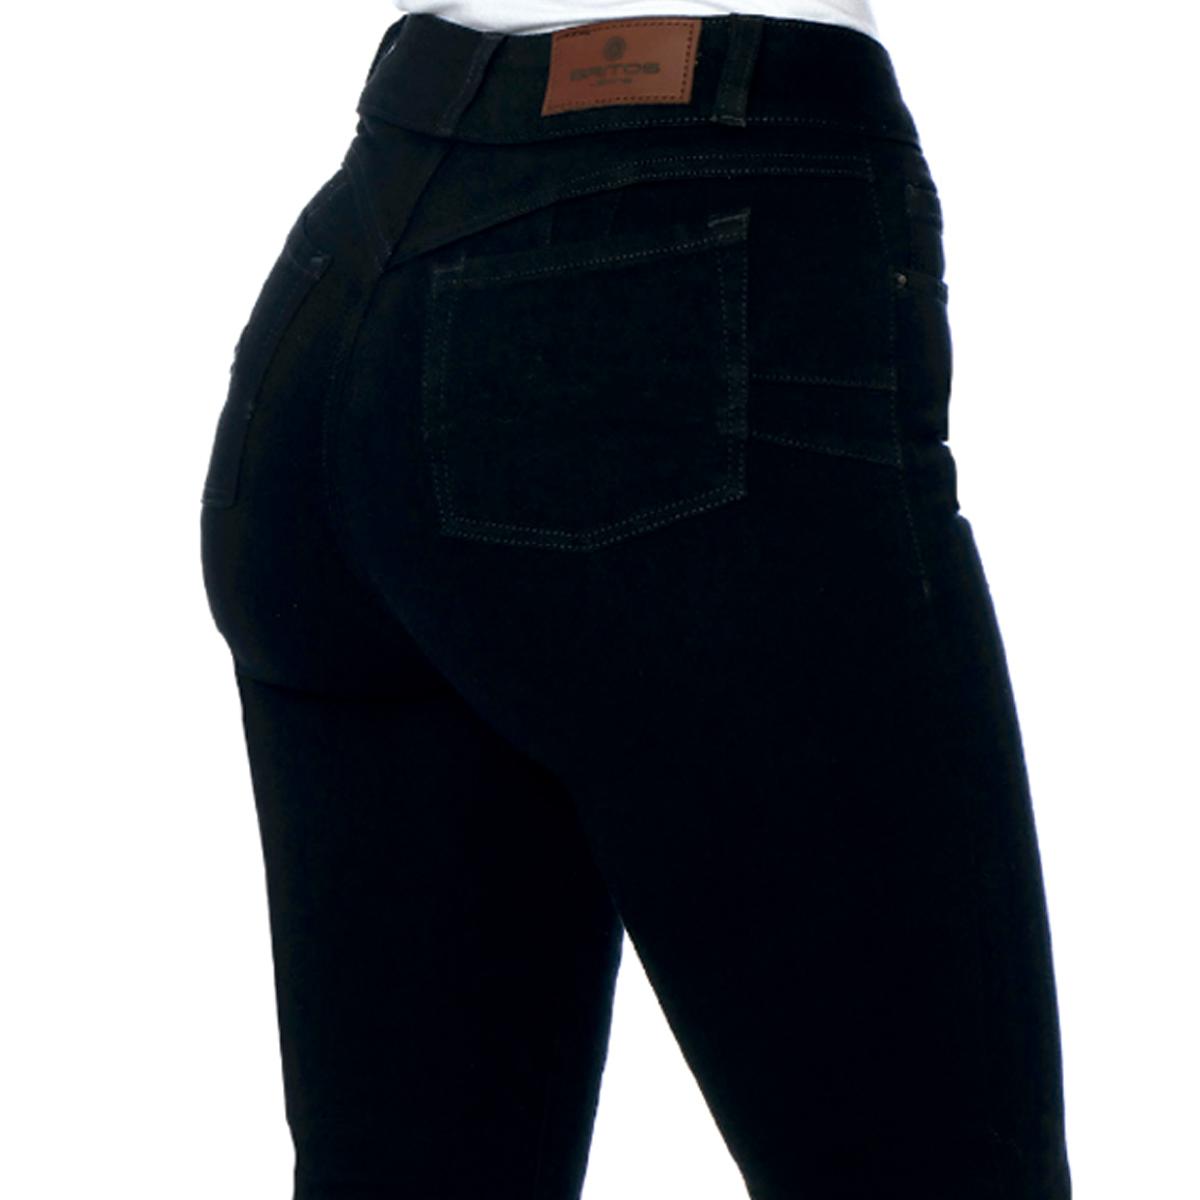 Jeans Magic Cintura Alta Recto / color negro